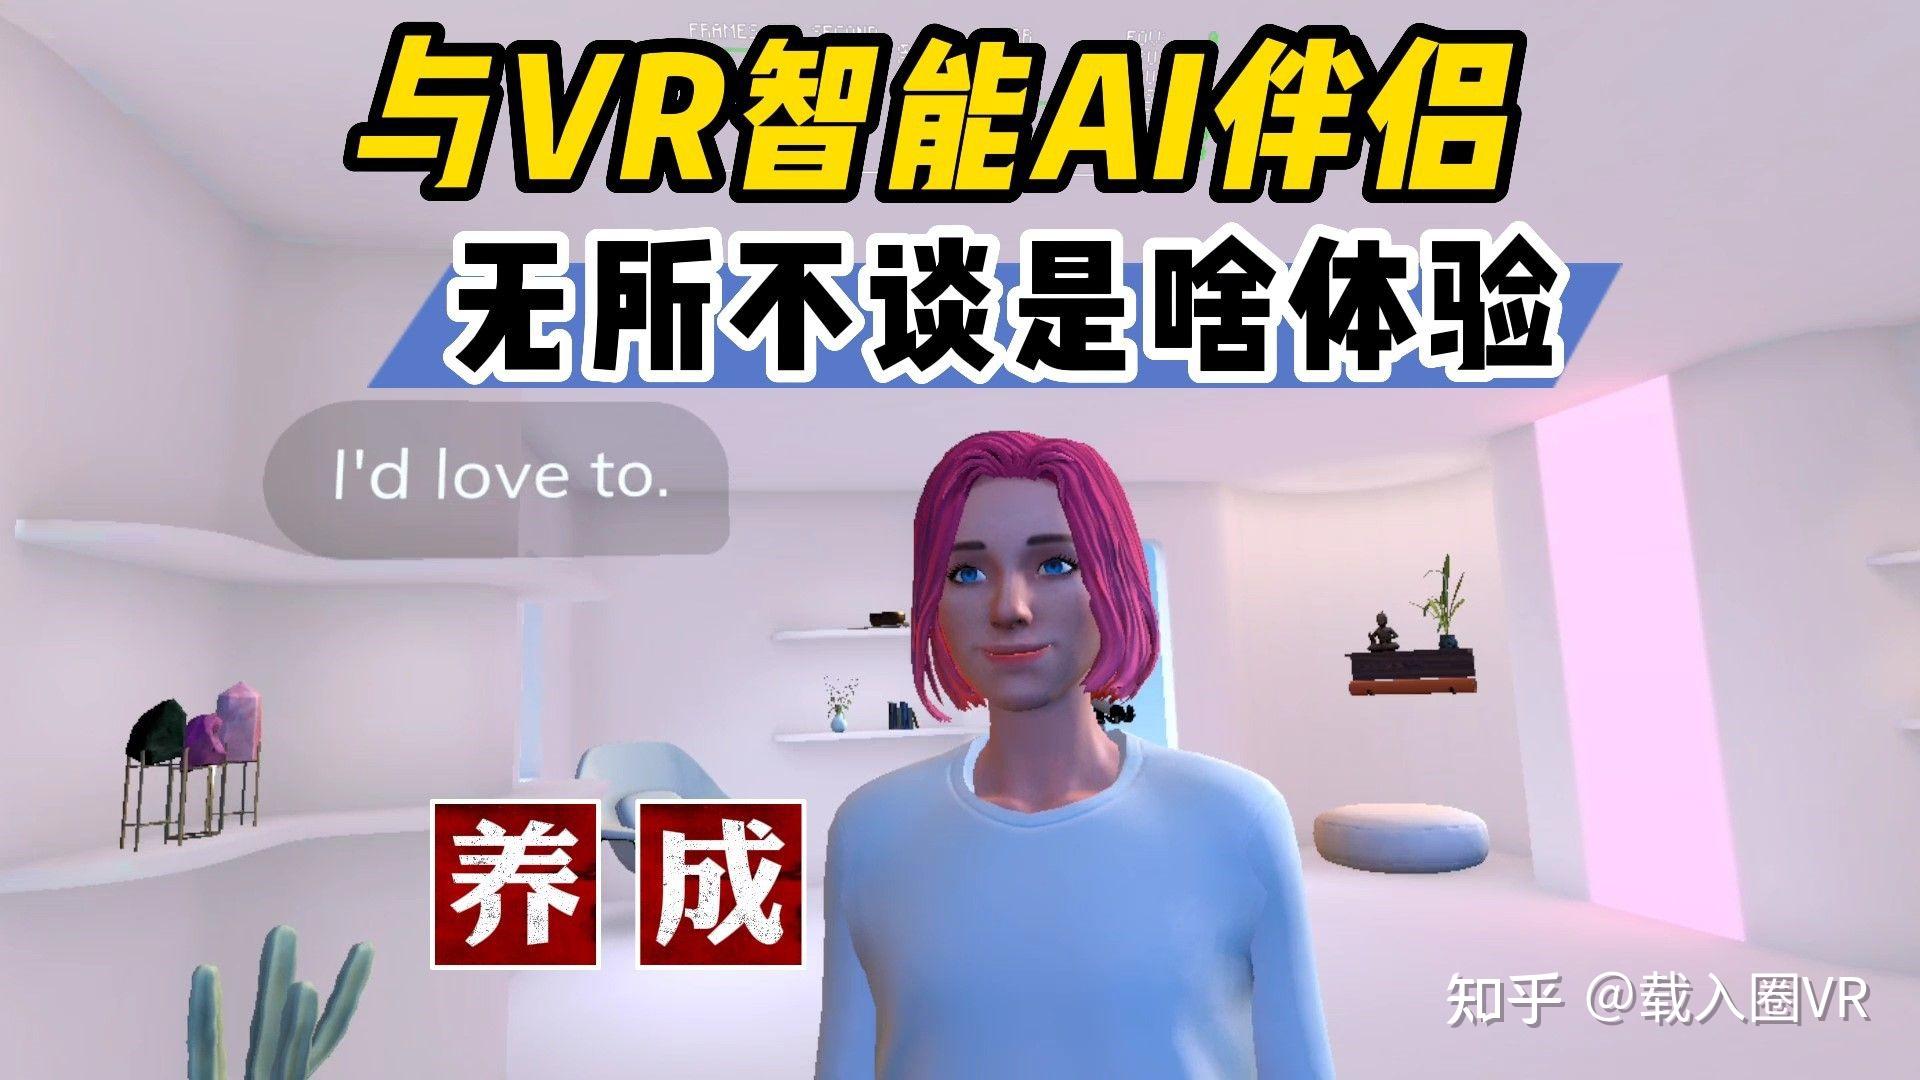 橙子VR与巨咖科技战略合作，引领VR走向更广阔蓝海